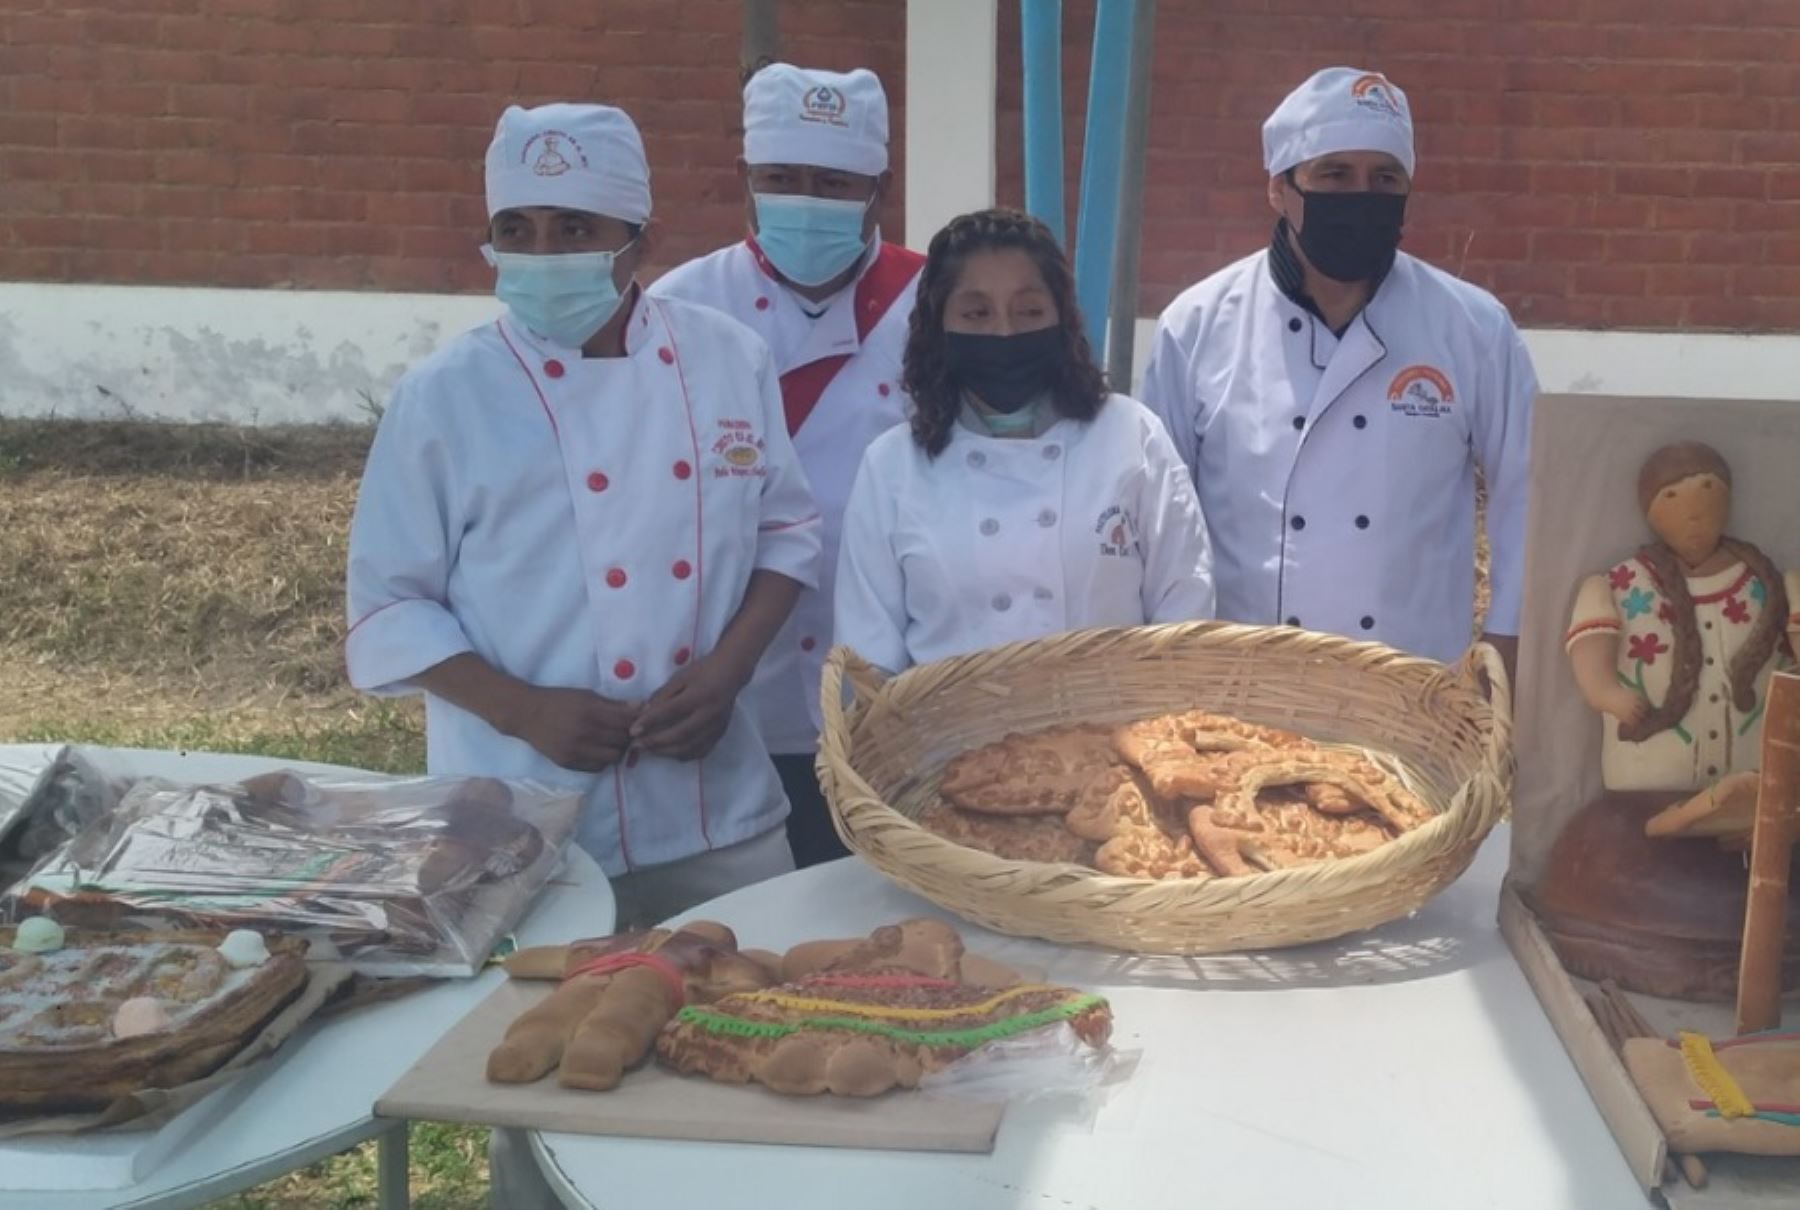 Con la elaboración de panes gigantes alusivos a la artesanía regional, un grupo de maestros panaderos del distrito de Monsefú, en la región Lambayeque, rindieron homenaje en el Día del Artesano a las artesanas de este tradicional distrito.